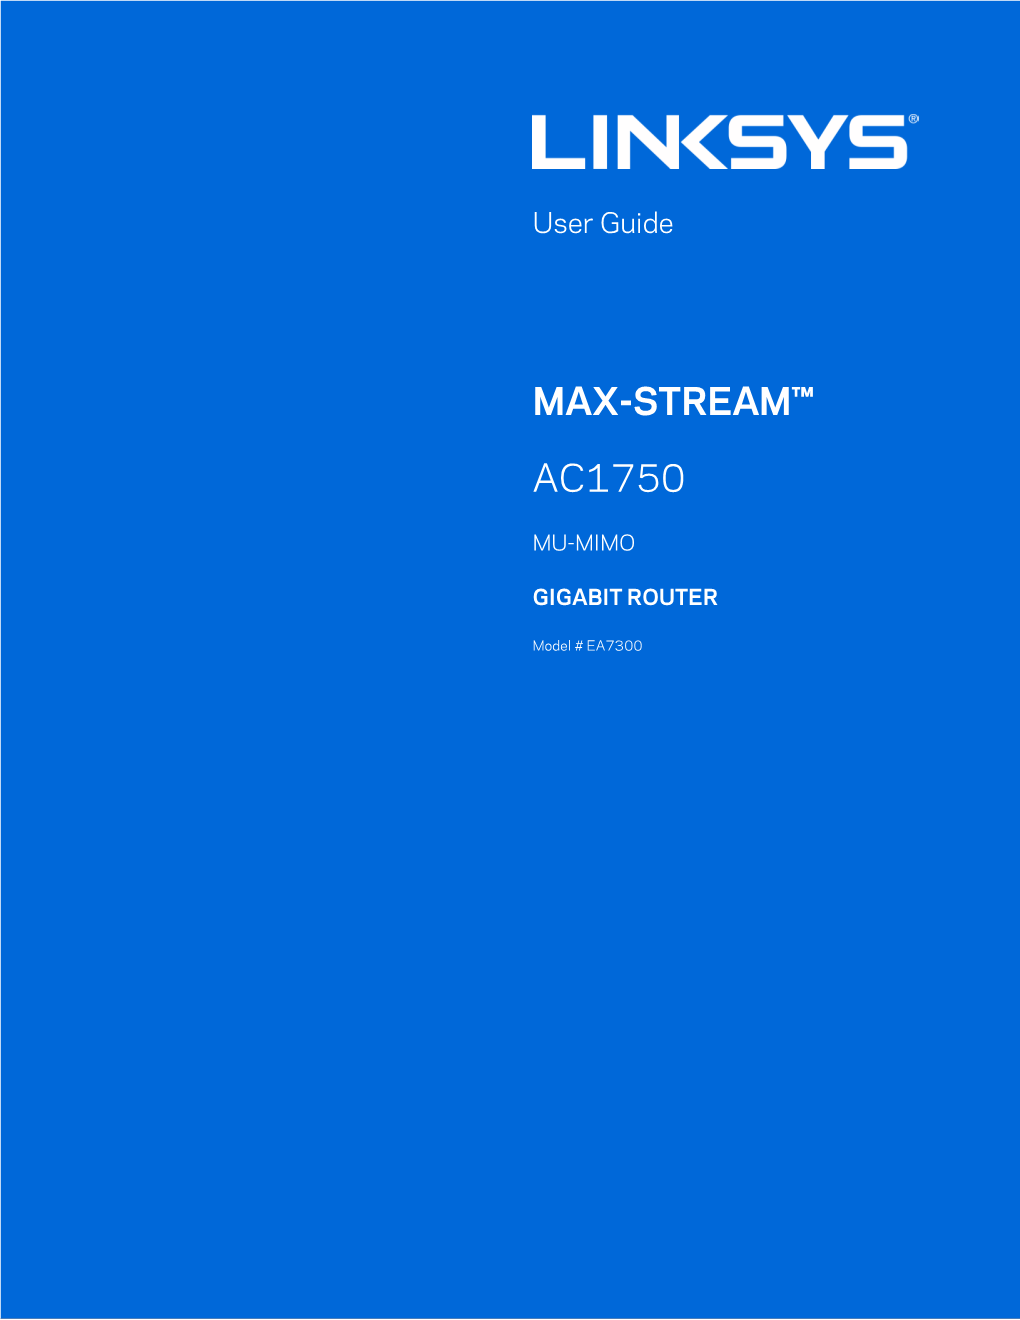 Max-Stream™ Ac1750